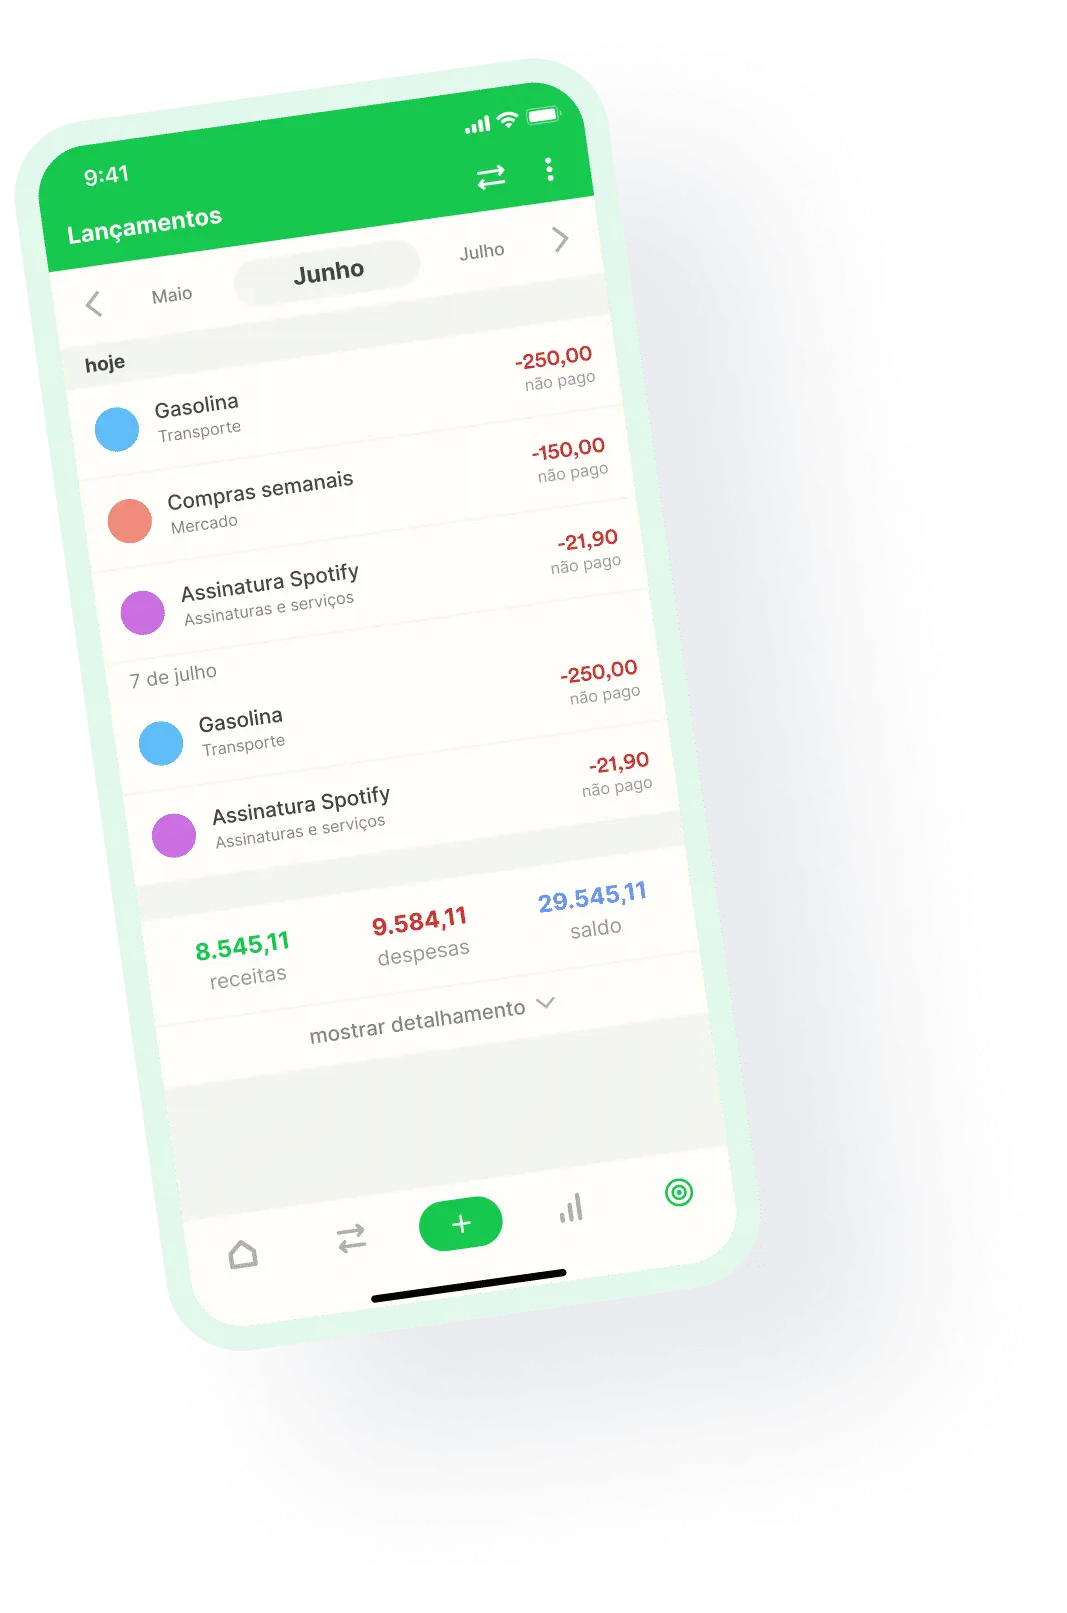 Imagem do Organizze, um app para controle financeiro pessoal, sendo exibido na tela de um celular